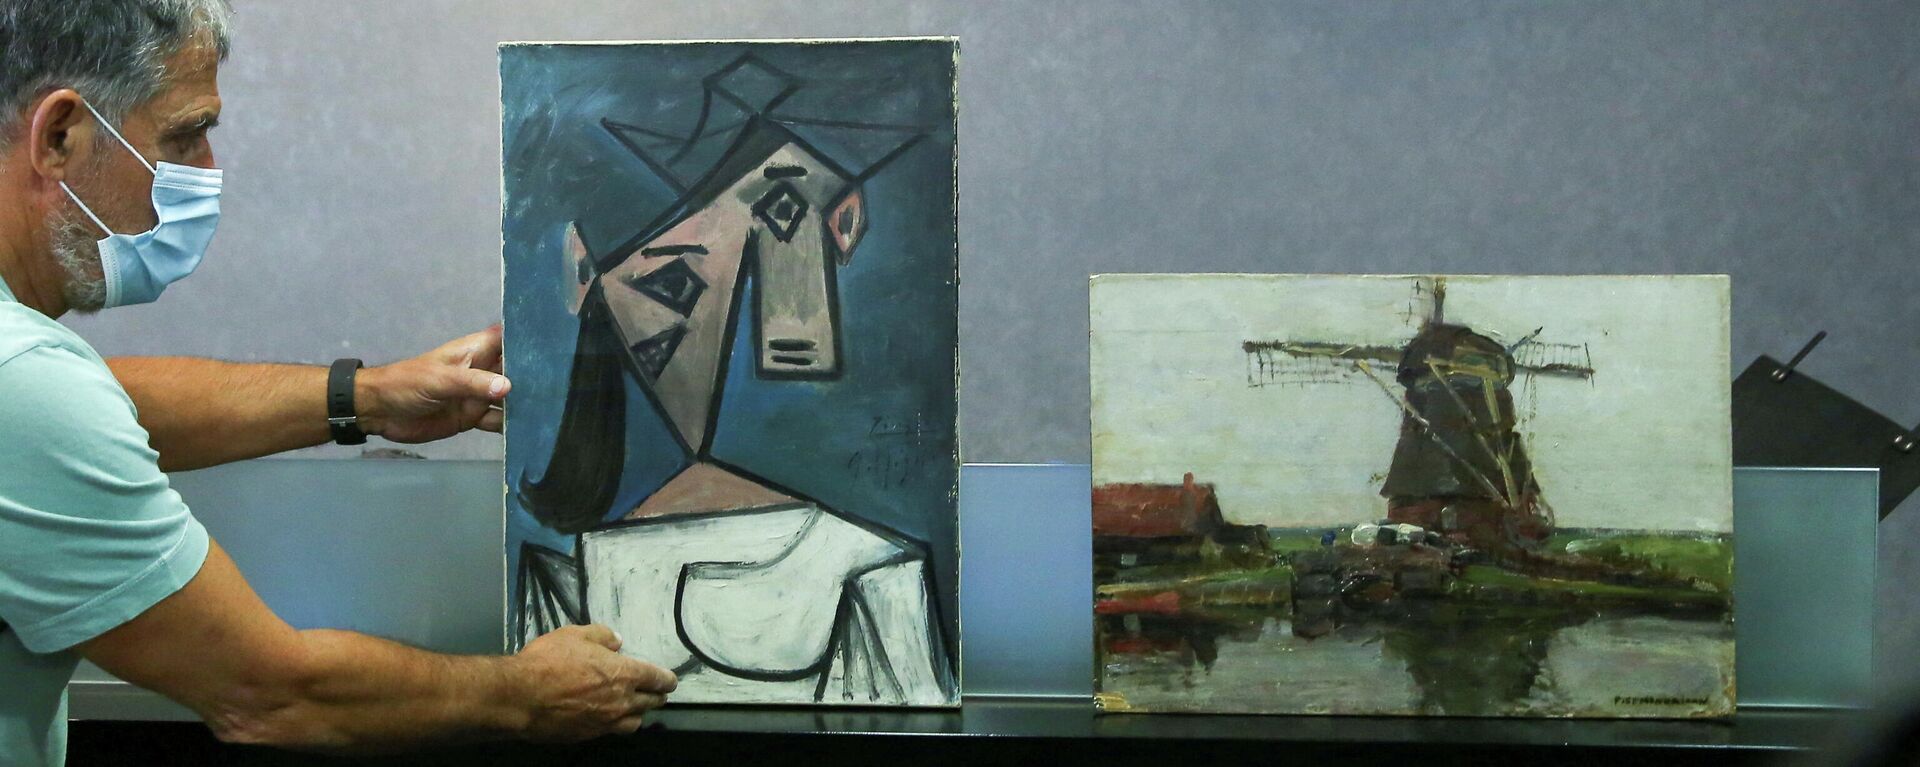 Obras de Picasso y Mondrian robadas hace nueve años de la Galería Nacional de Grecia (Atenas) - Sputnik Mundo, 1920, 29.06.2021